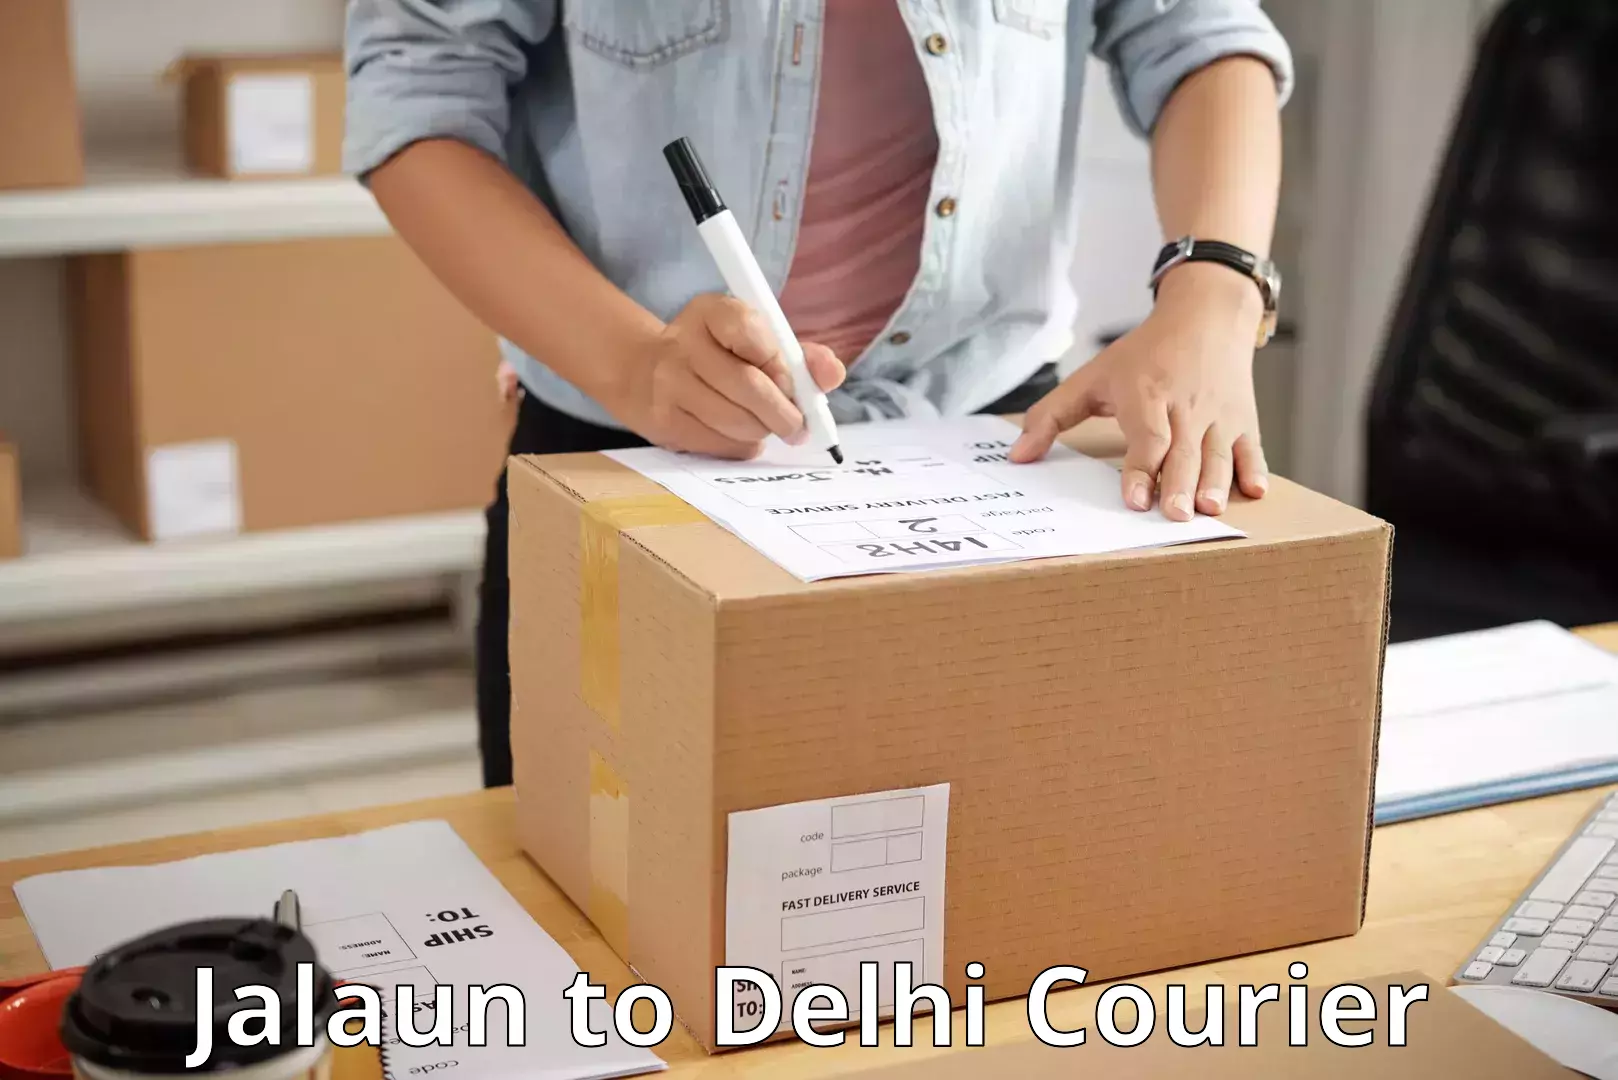 State-of-the-art courier technology Jalaun to Jamia Millia Islamia New Delhi